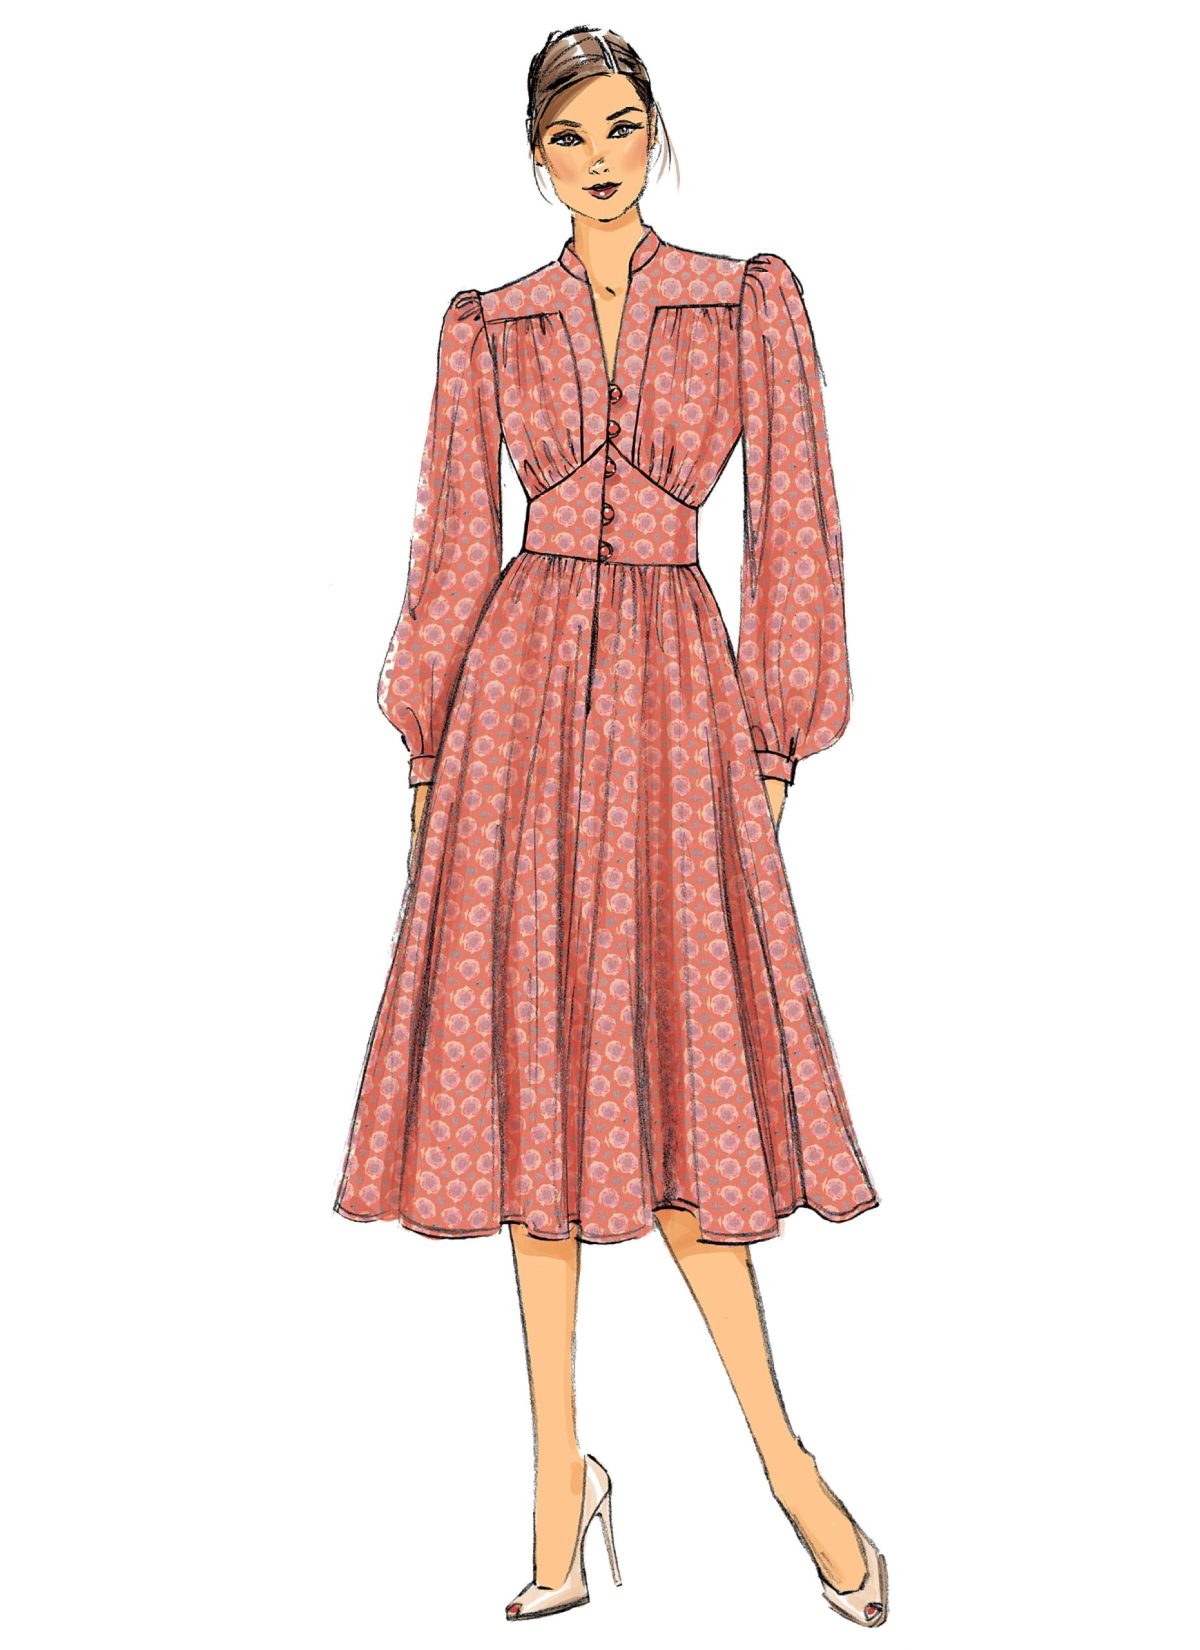 Vogue Patterns V9076 Misses' Dress